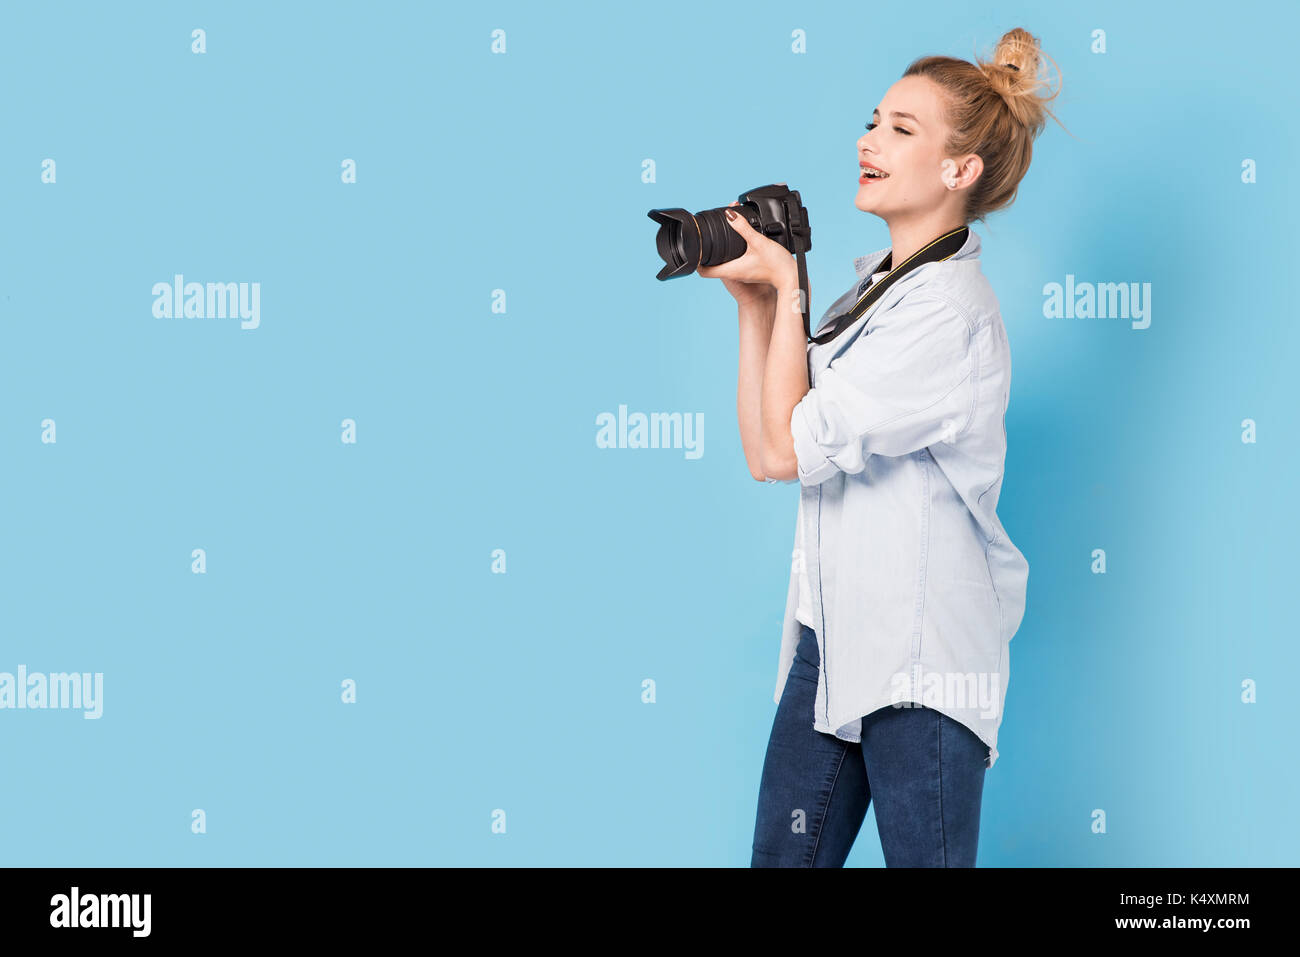 Junge blonde Fotografin ist fotografieren. Modell isoliert auf einem blauen Hintergrund mit Textfreiraum Stockfoto